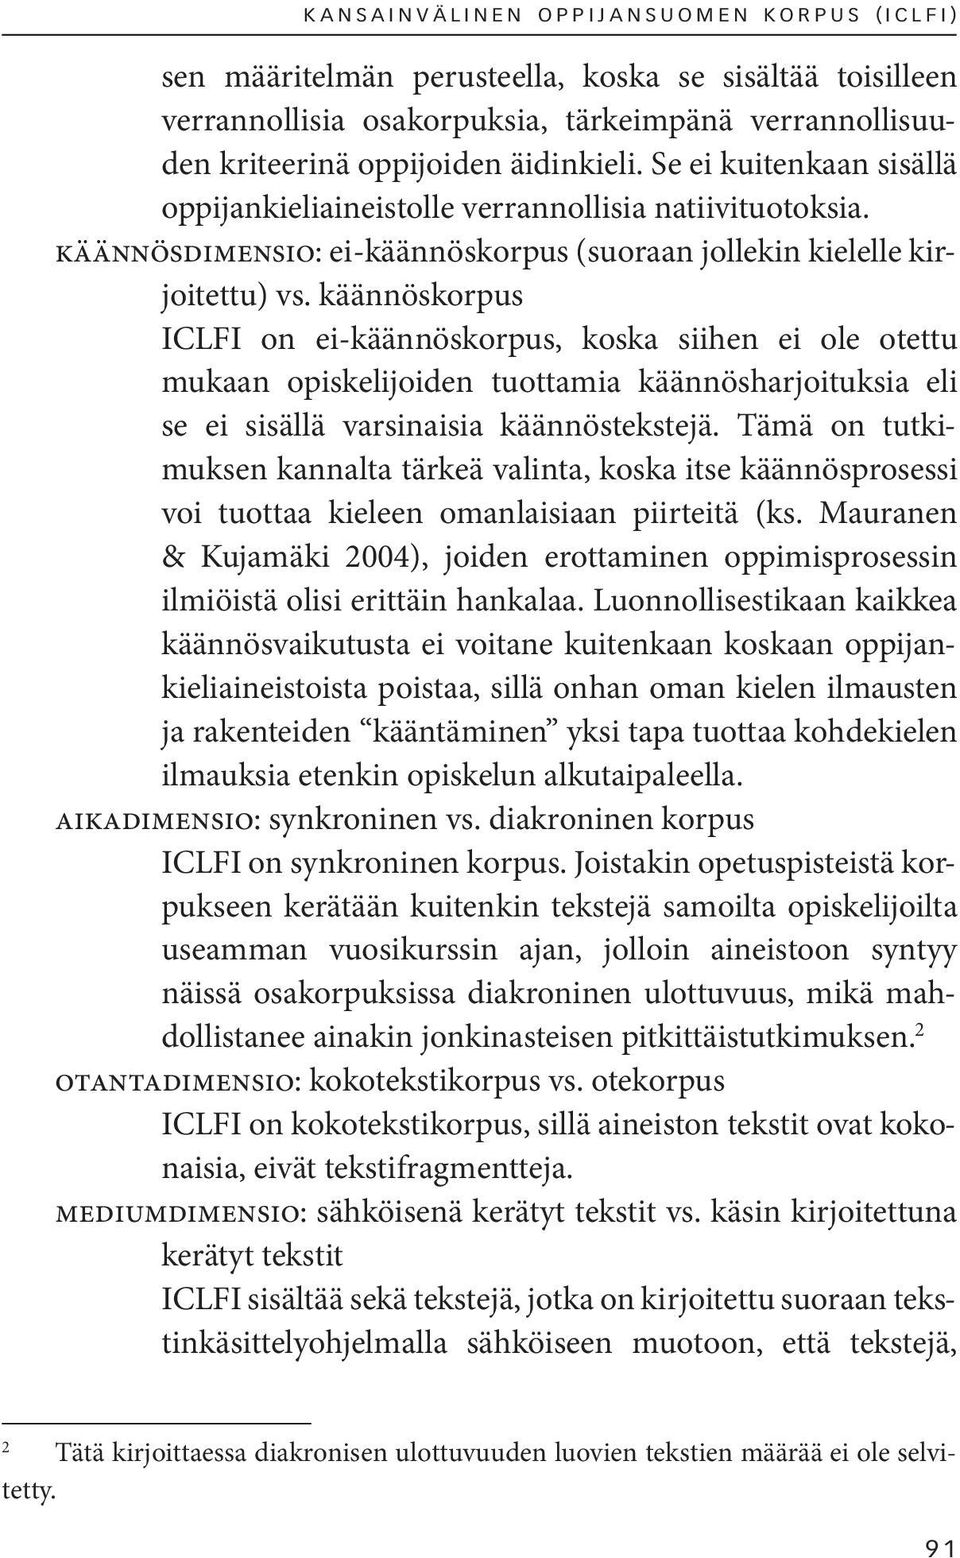 käännöskorpus ICLFI on ei-käännöskorpus, koska siihen ei ole otettu mukaan opiskelijoiden tuottamia käännösharjoituksia eli se ei sisällä varsinaisia käännöstekstejä.